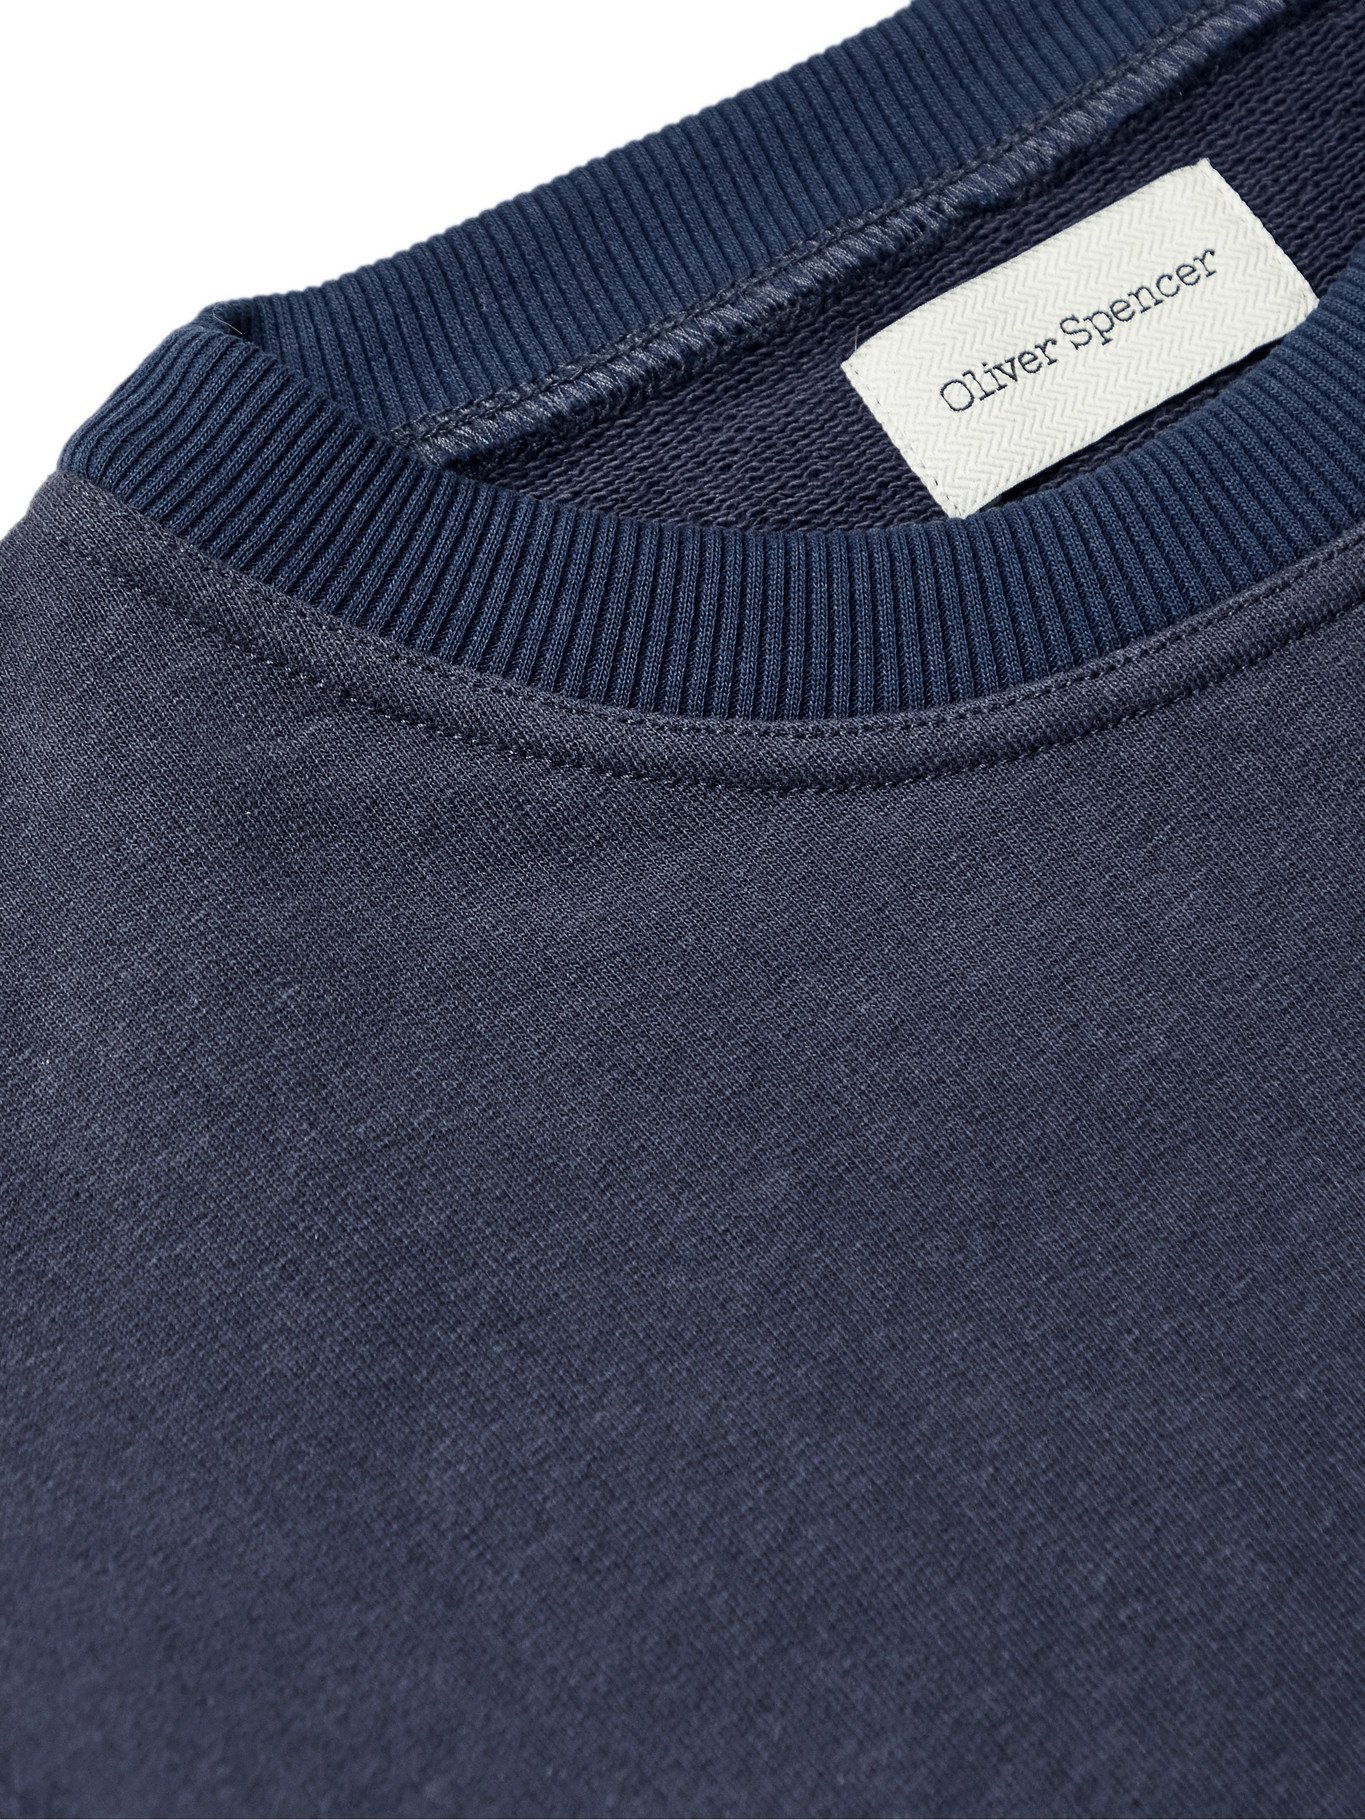 OLIVER SPENCER - Robin Mélange Loopback Cotton and Linen-Blend Jersey Sweatshirt - Blue